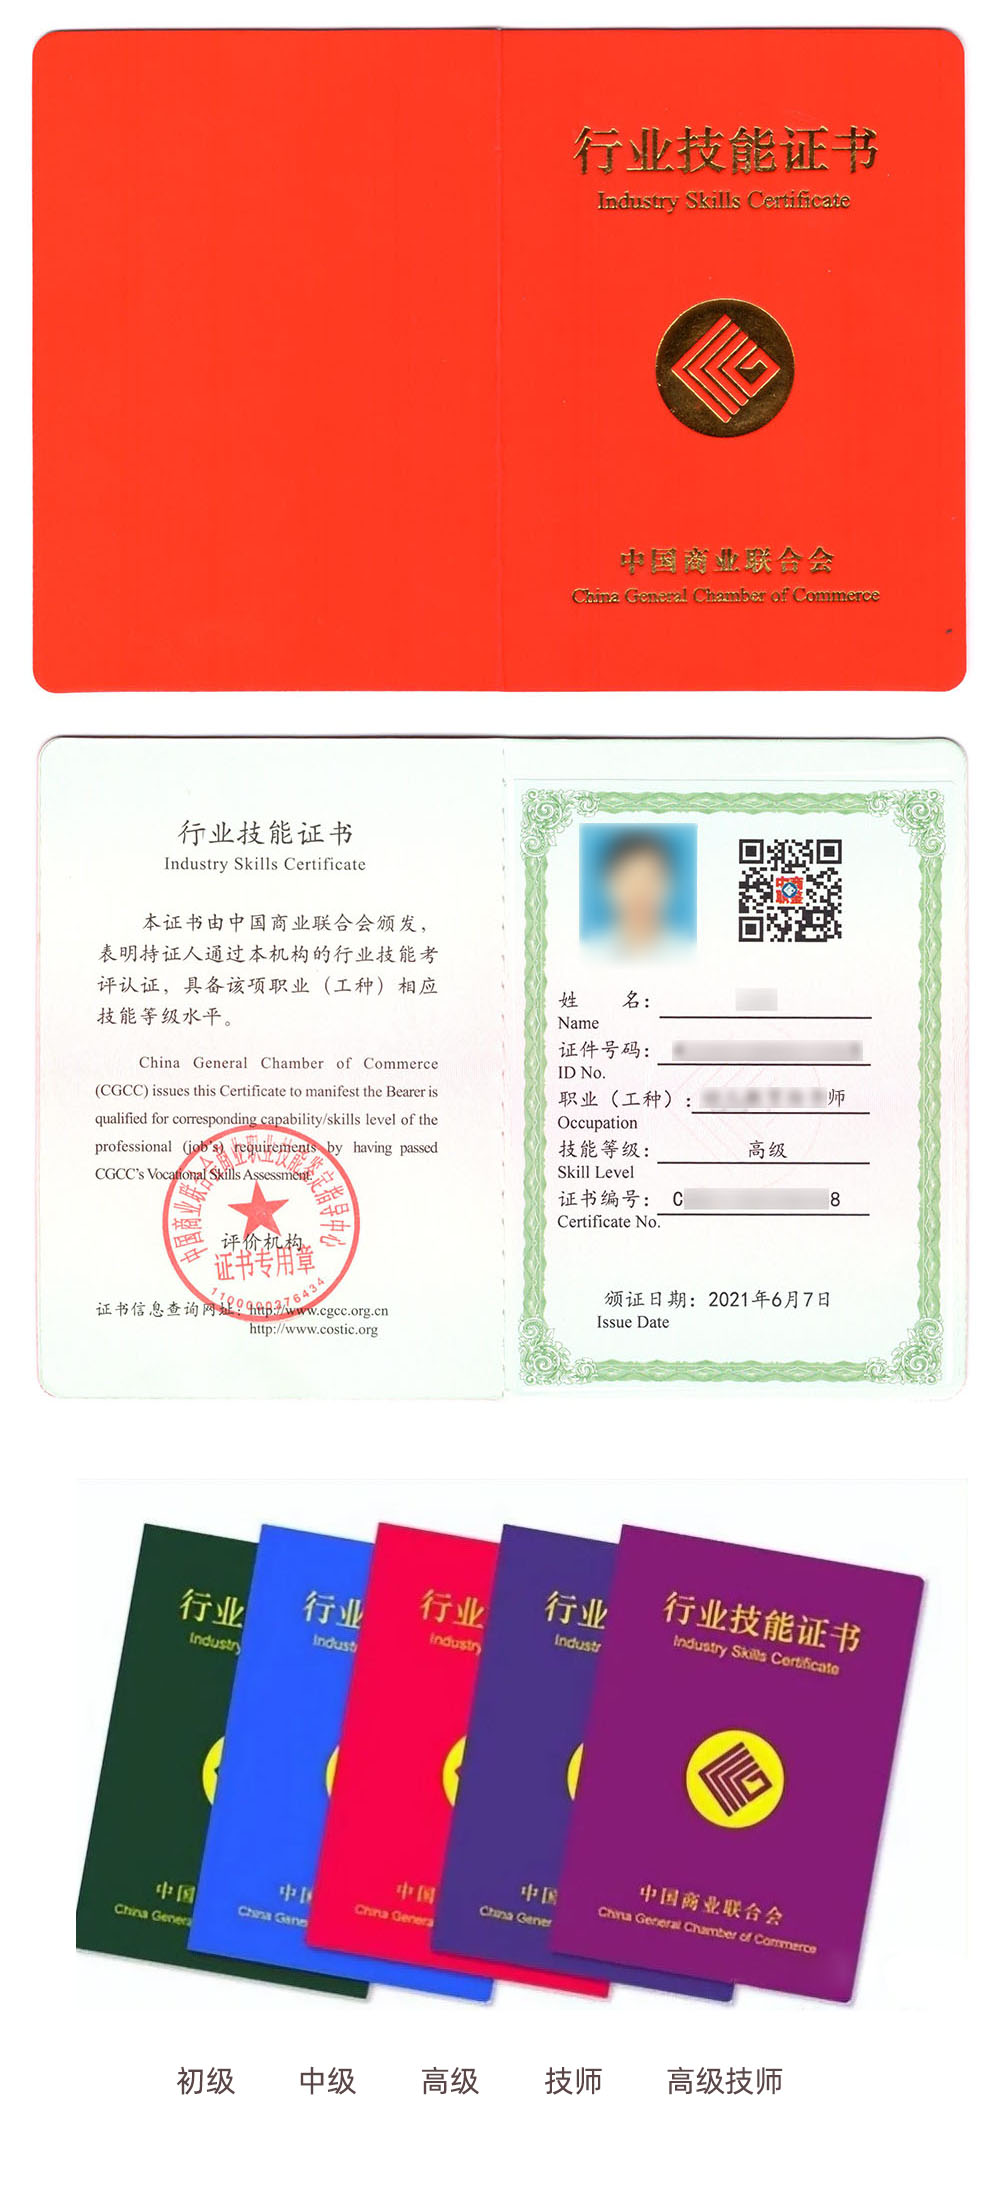 中国商业联合会商业职业技能鉴定中心 行业技能证书 新媒体营销师证证书样本